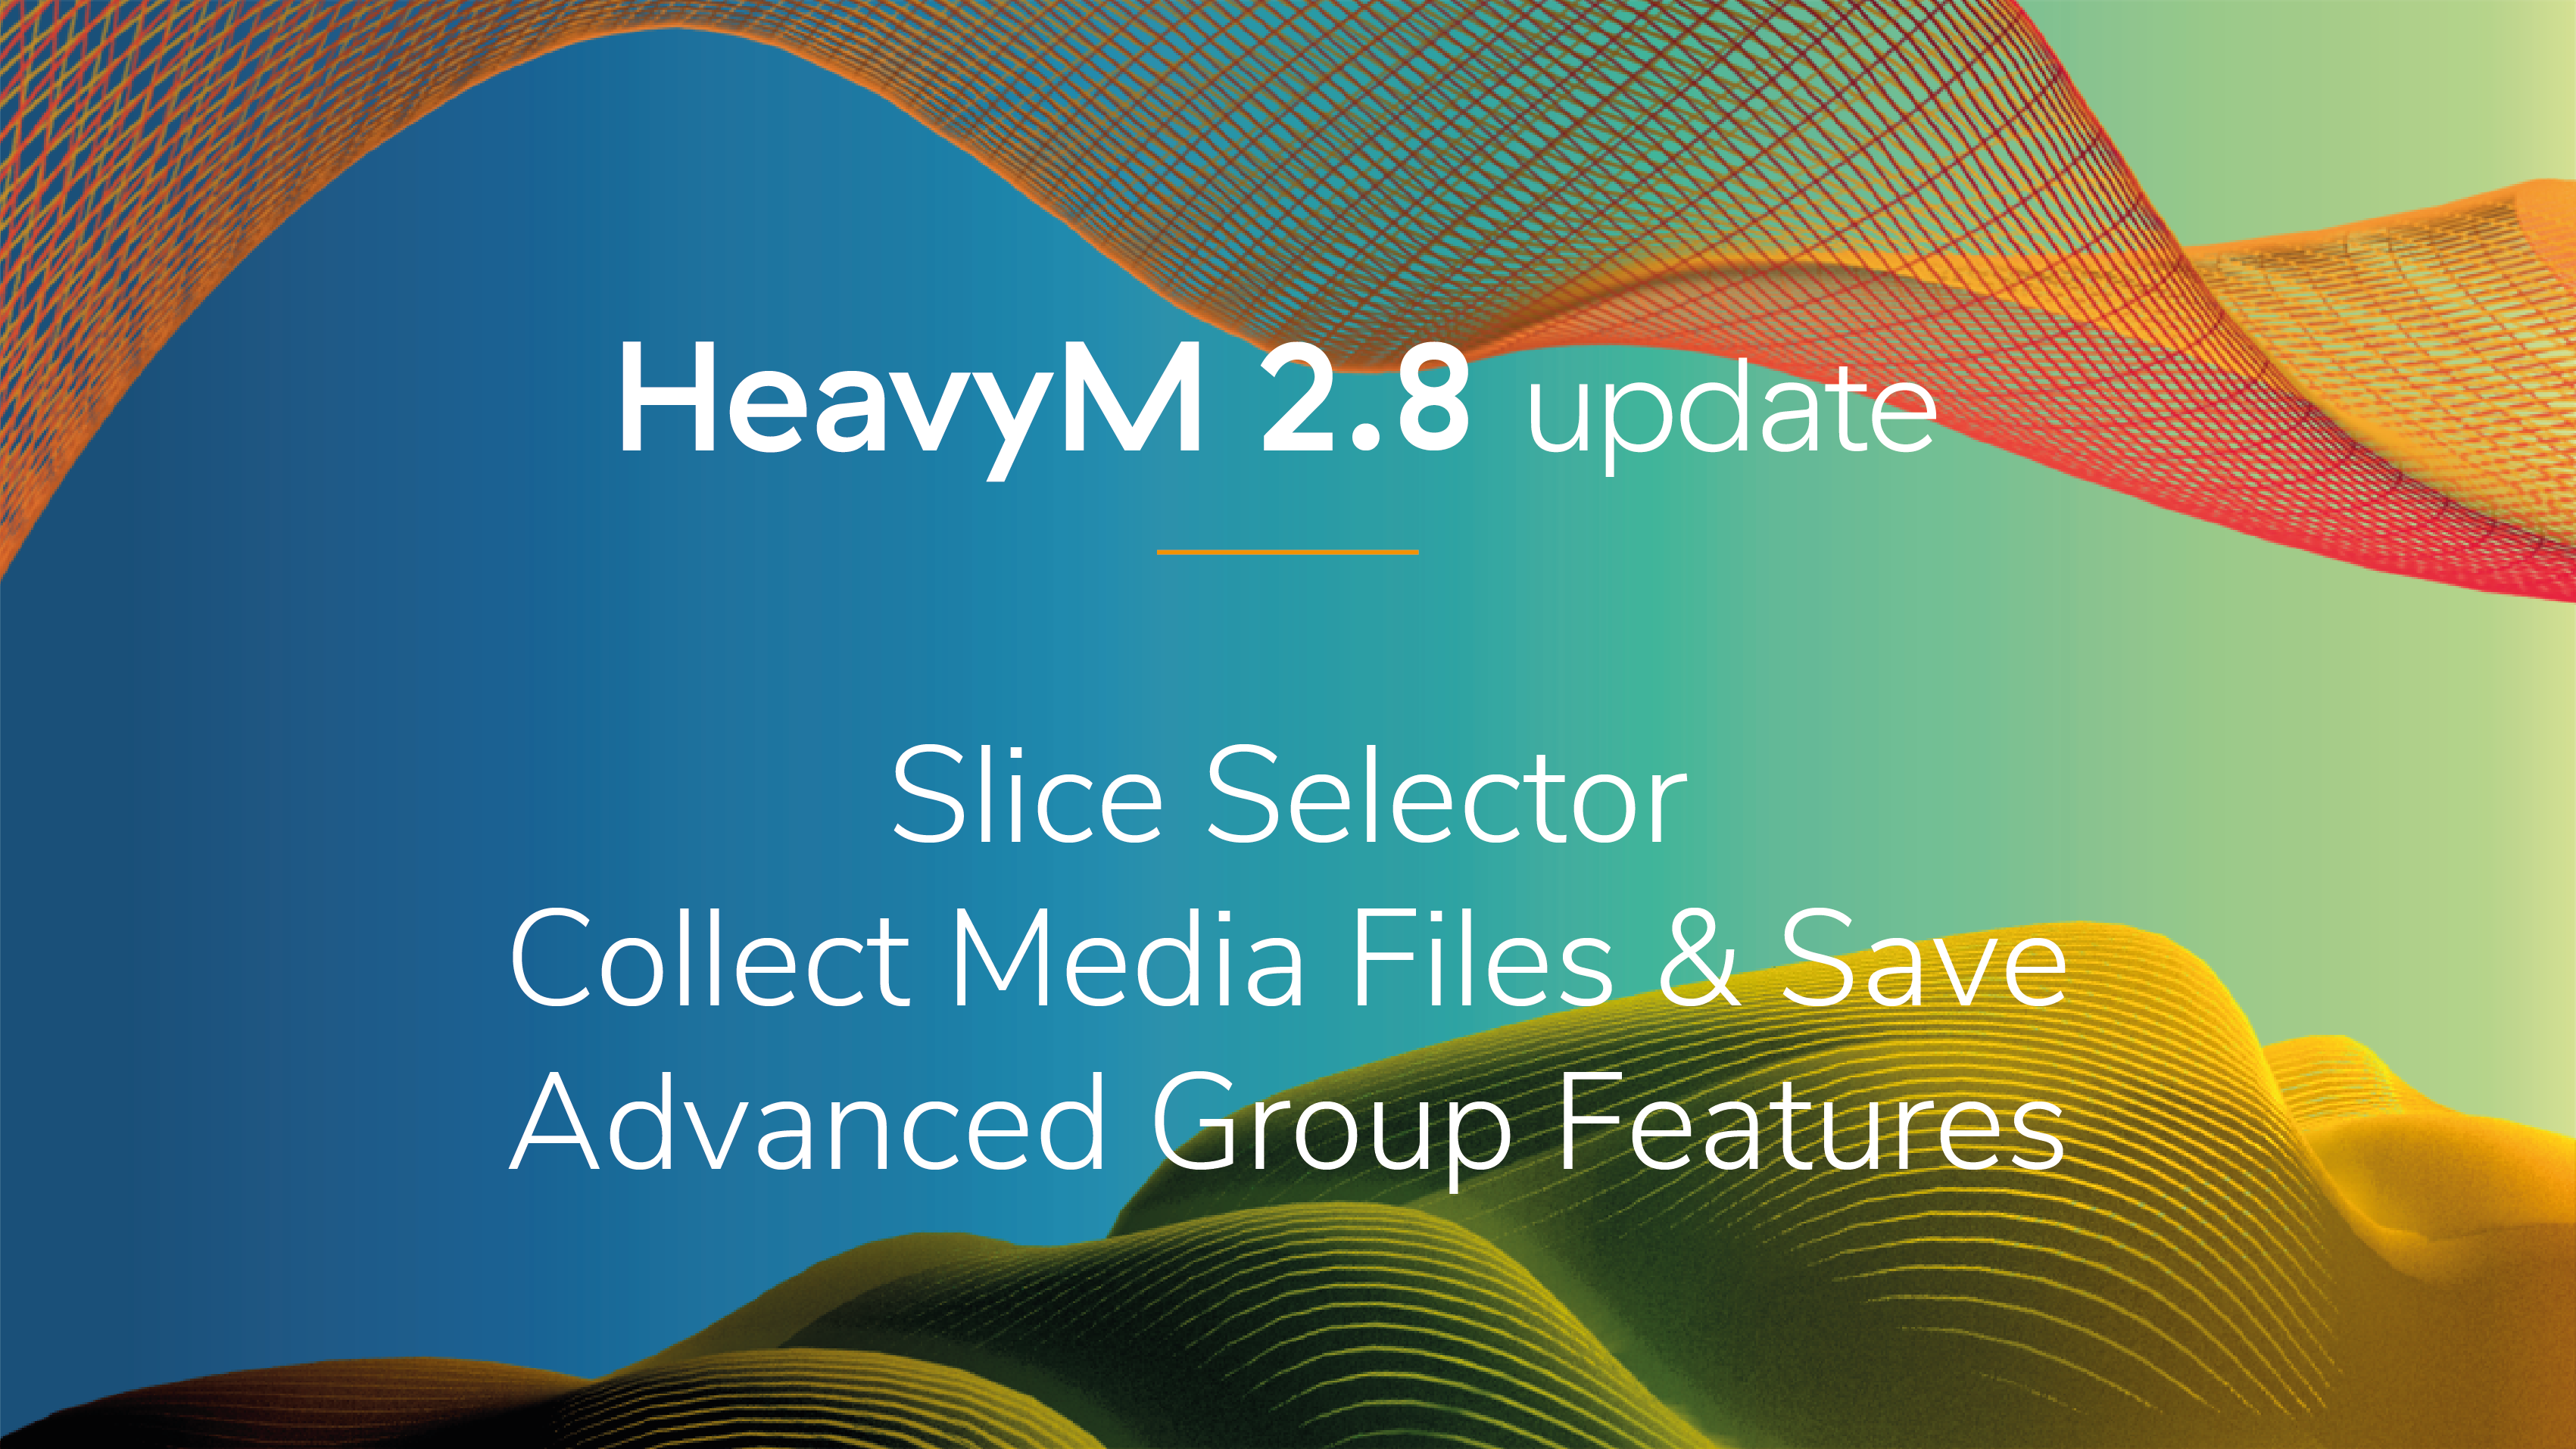 HeavyM 2.8 - update